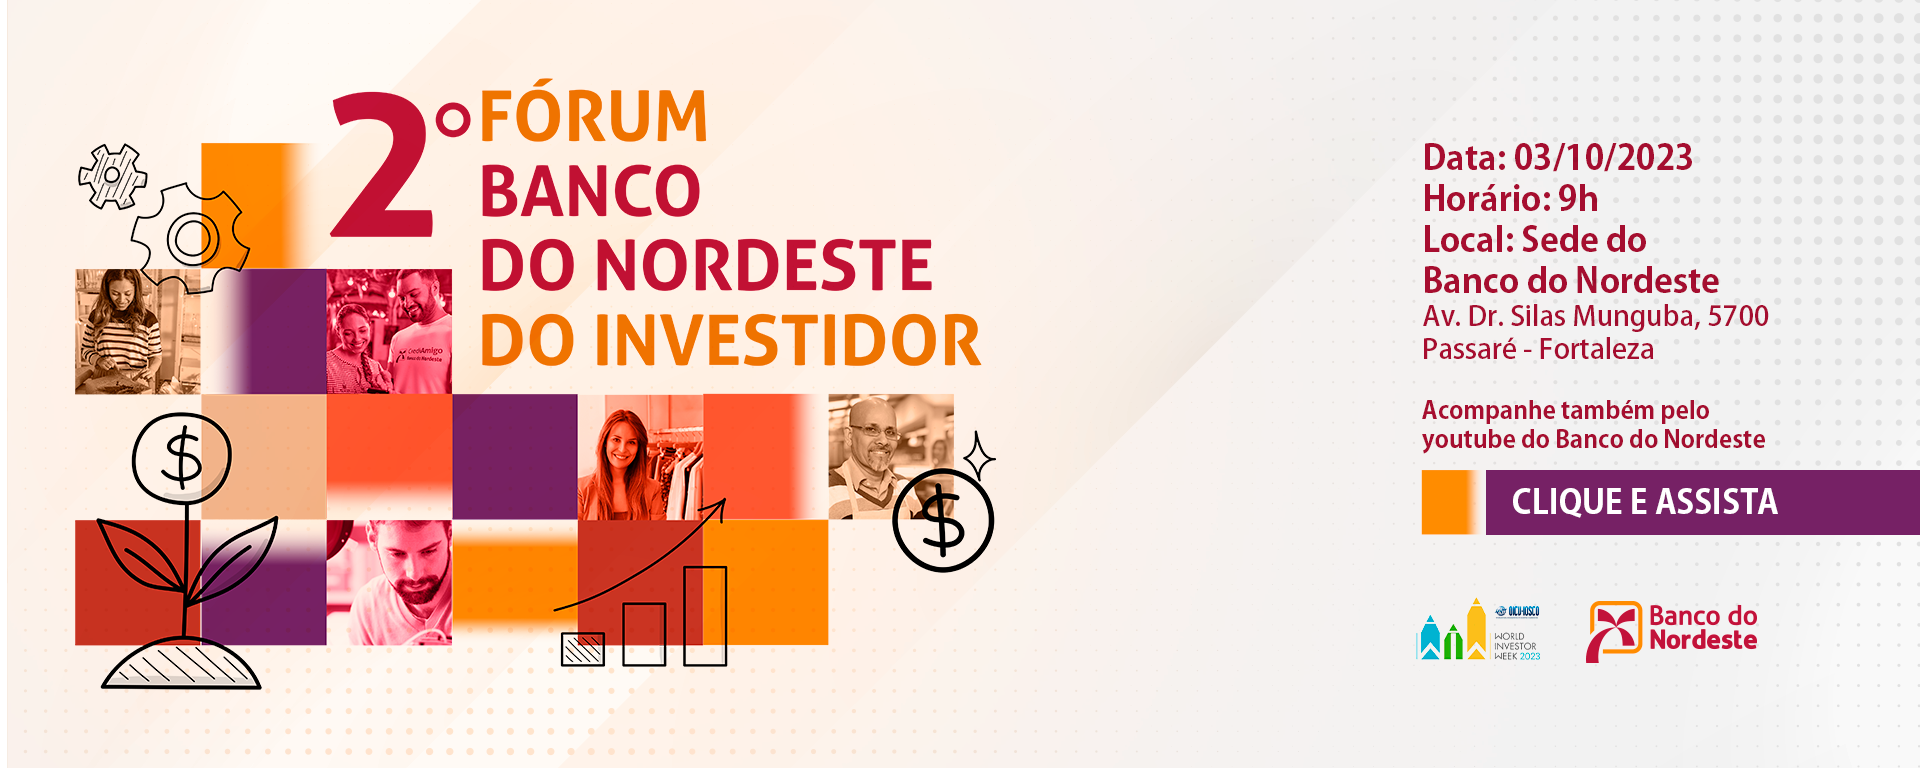 Dia 03/10 ocorre o 2º Fórum Banco do Nordeste do Investidor. Inscreva-se.